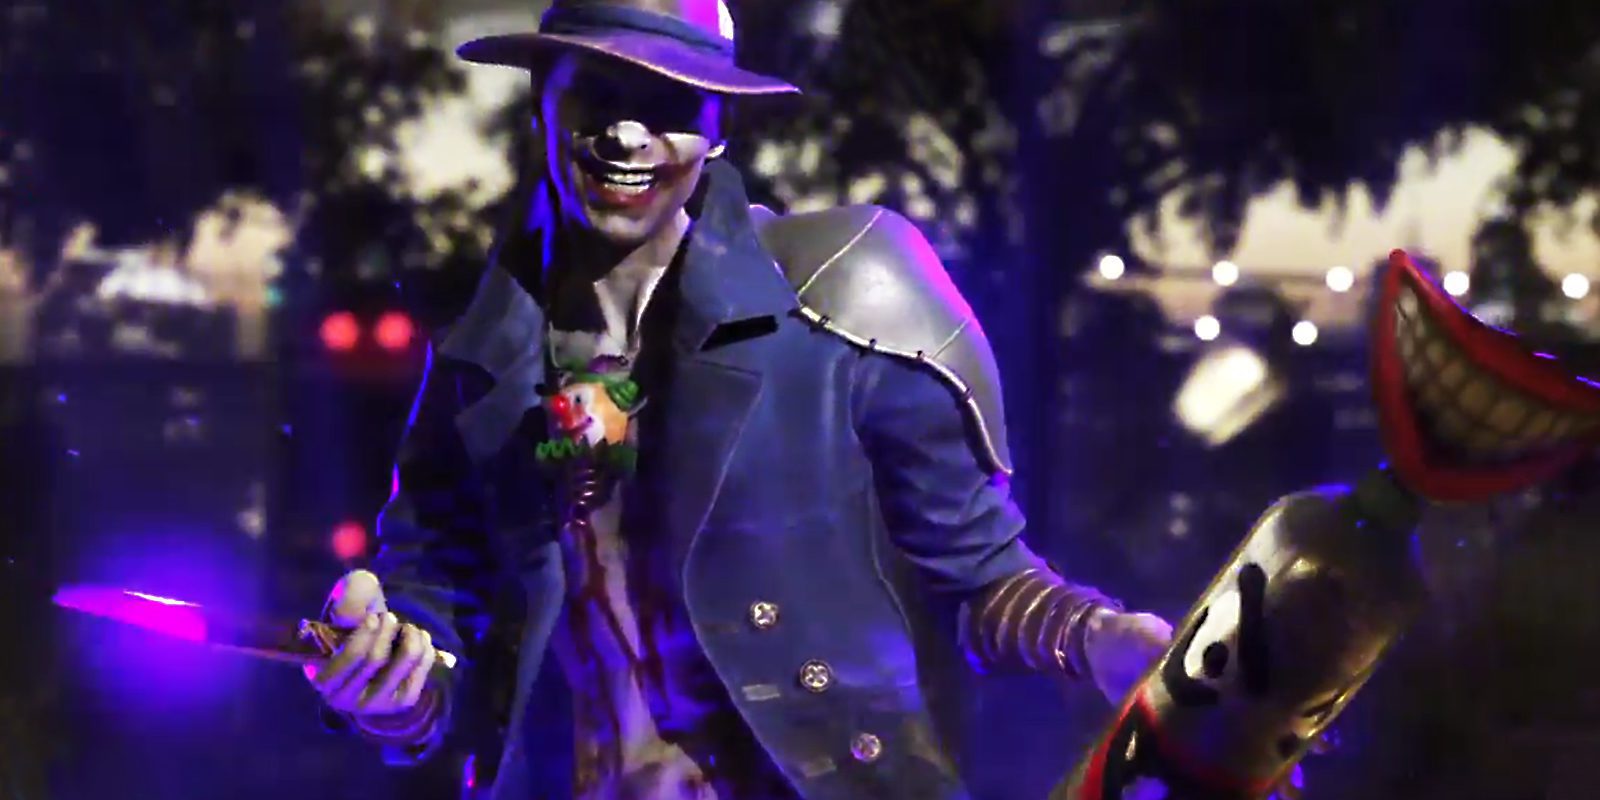 Se filtra el aspecto de El Joker en 'Injustice 2'